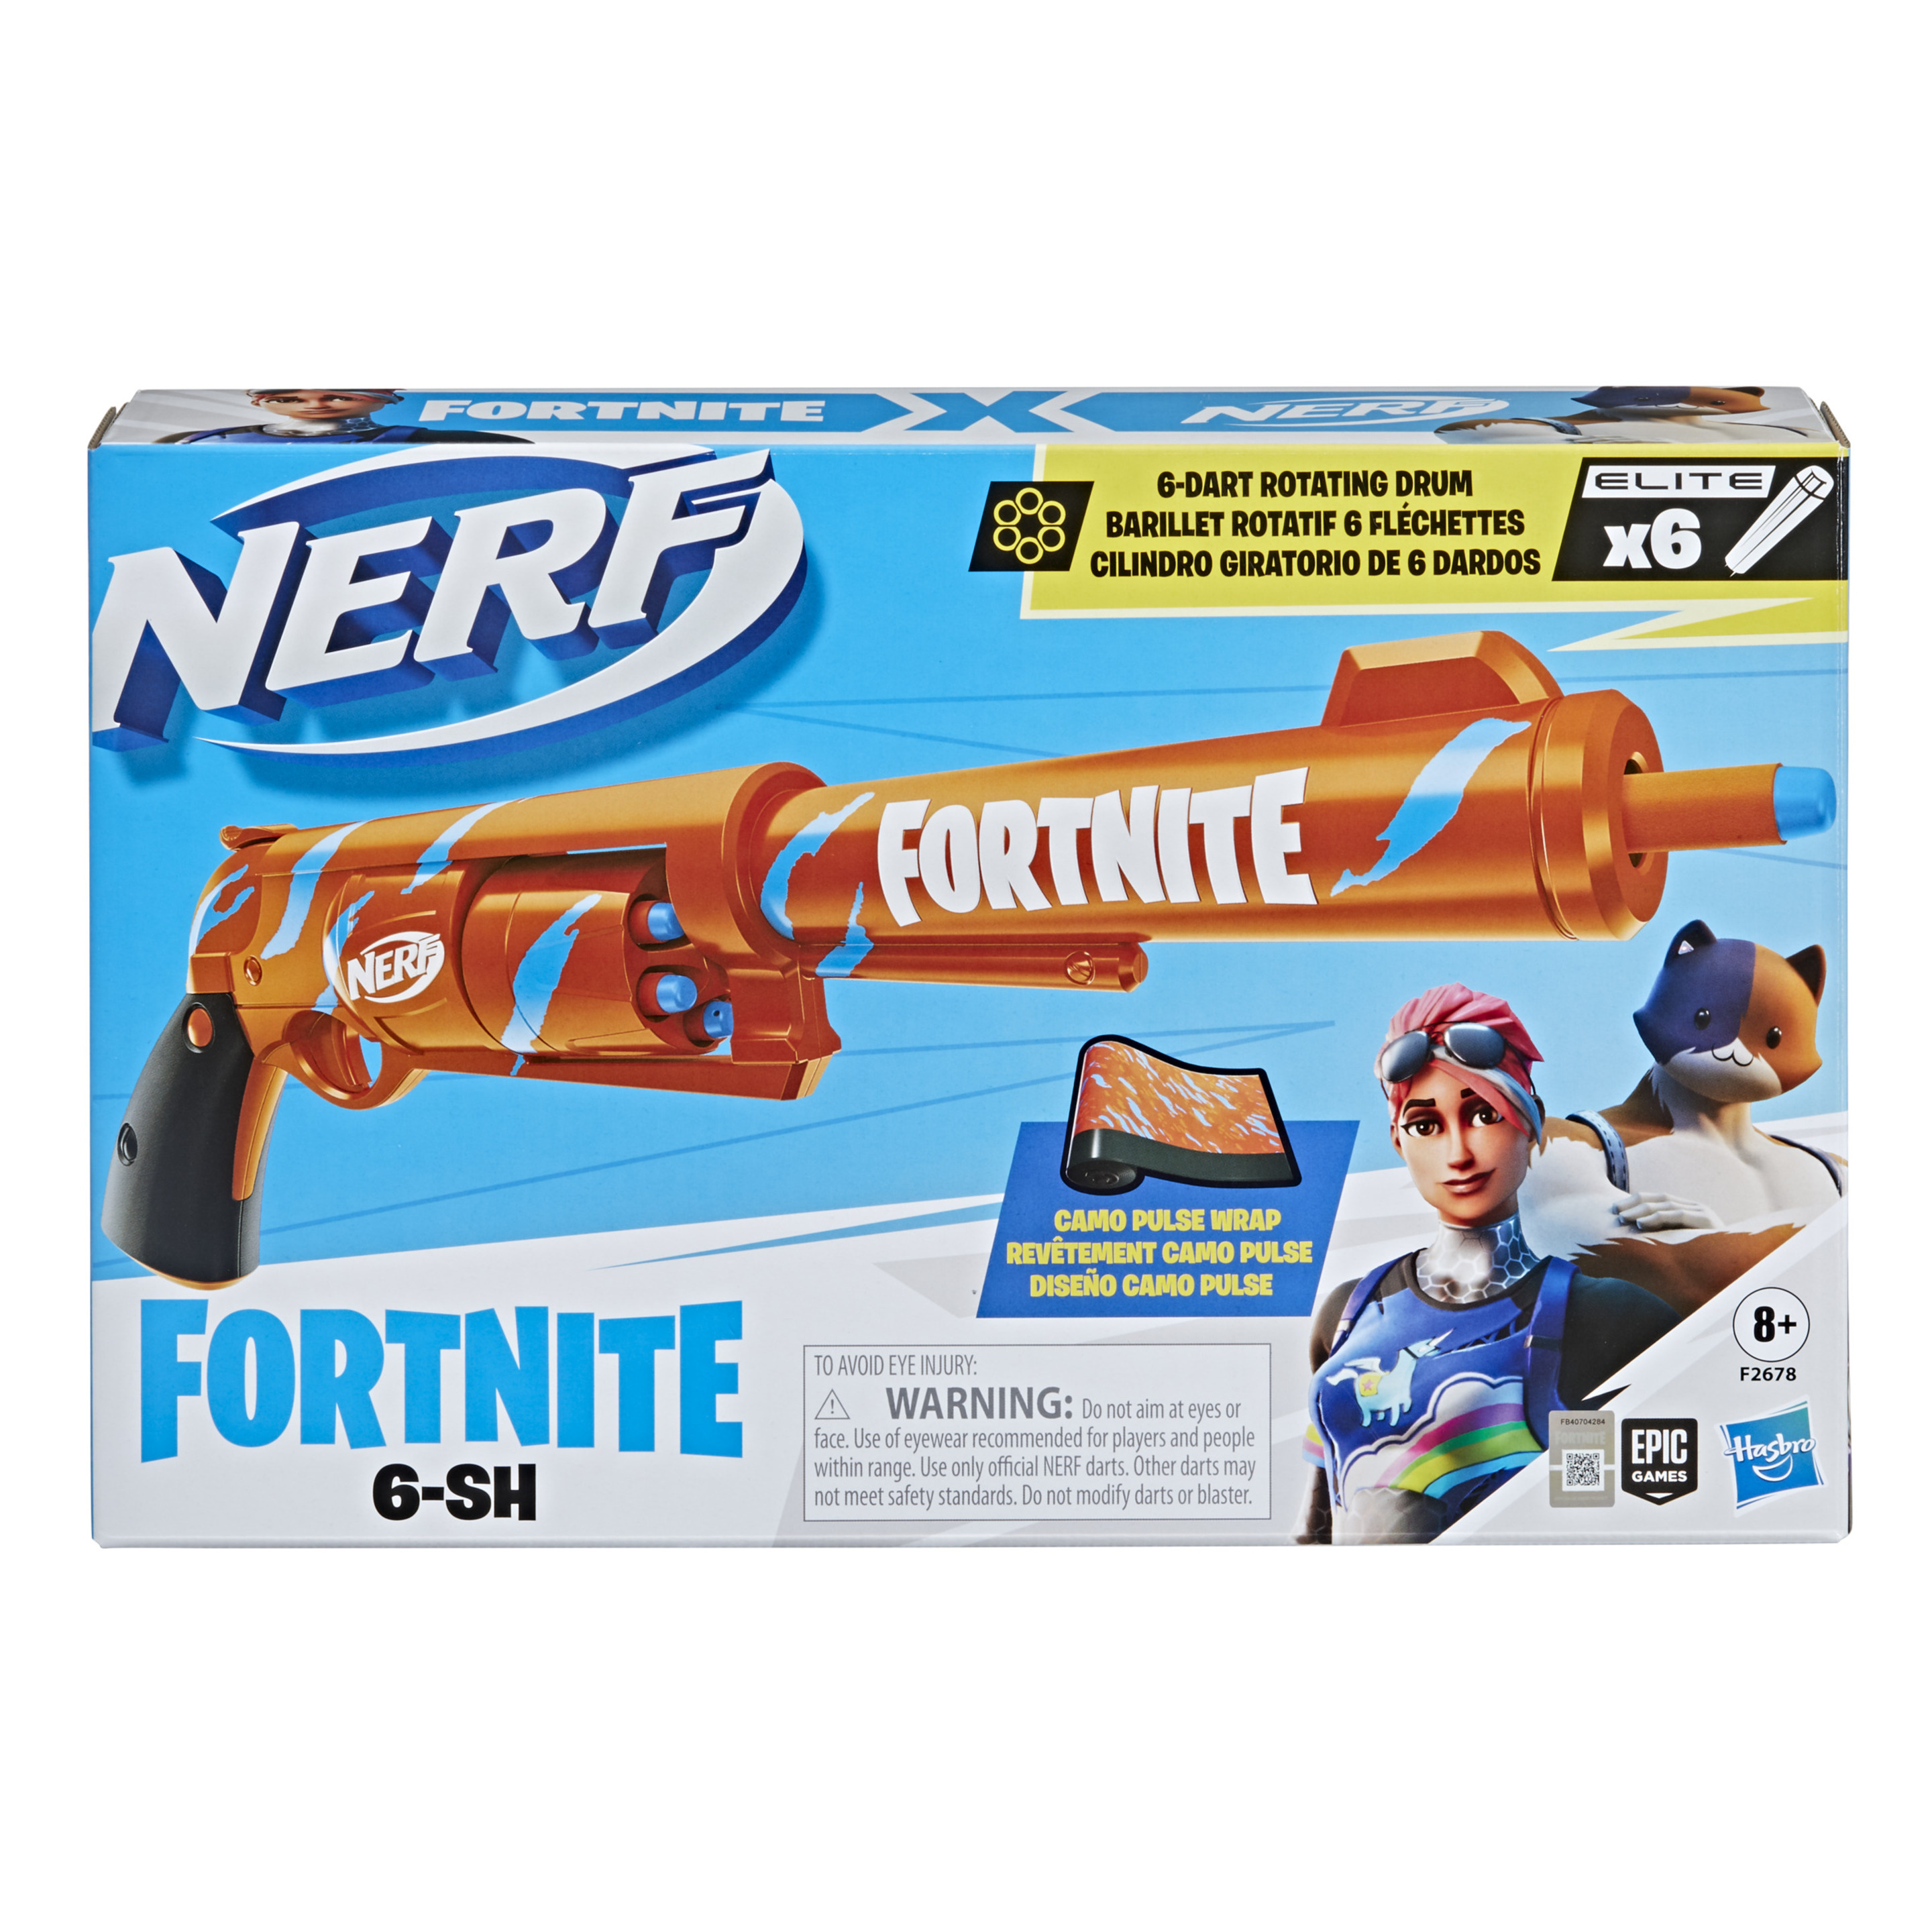 Nerf Fortnite 6-sh - Nerf